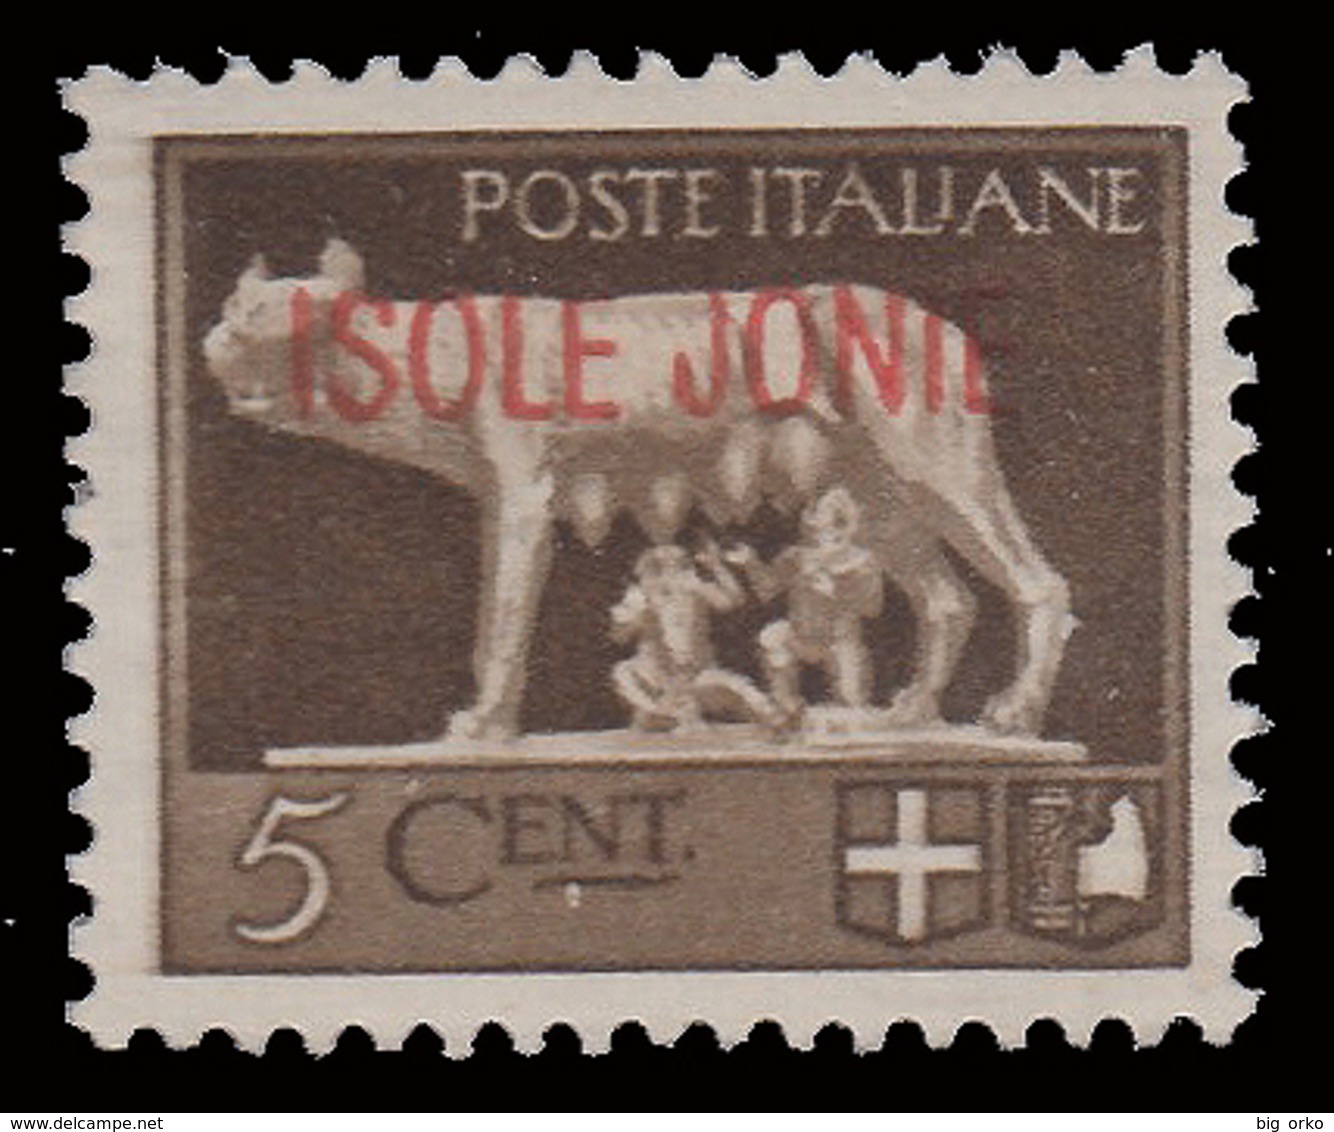 ITALIA - ISOLE JONIE (Emissioni Generali) - 5 C. Bruno - 1941 - Iles Ioniques